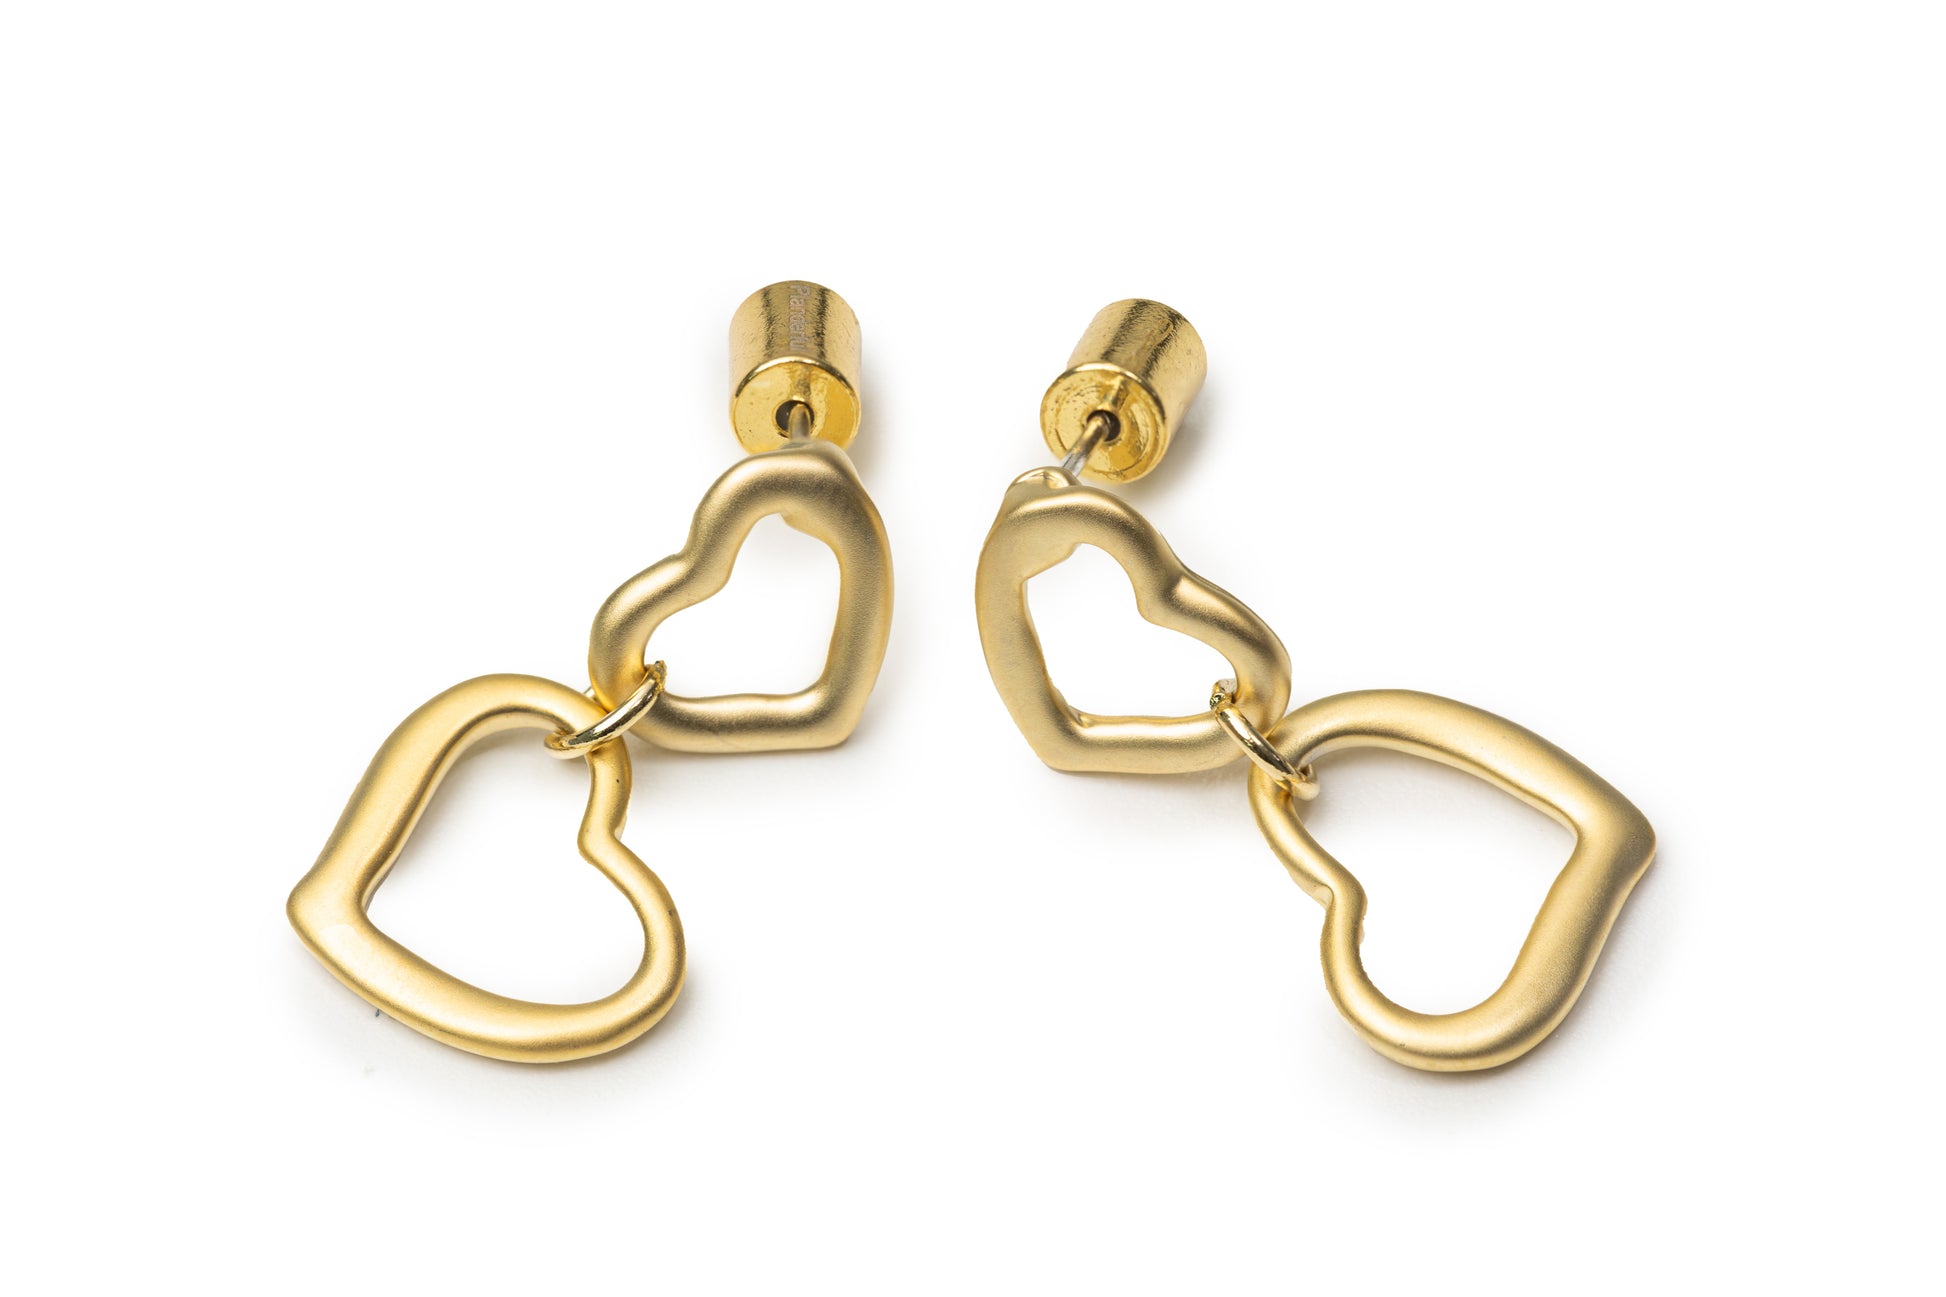 Planderful Double Heart Drop Earrings - Golden Drop Earrings for Women